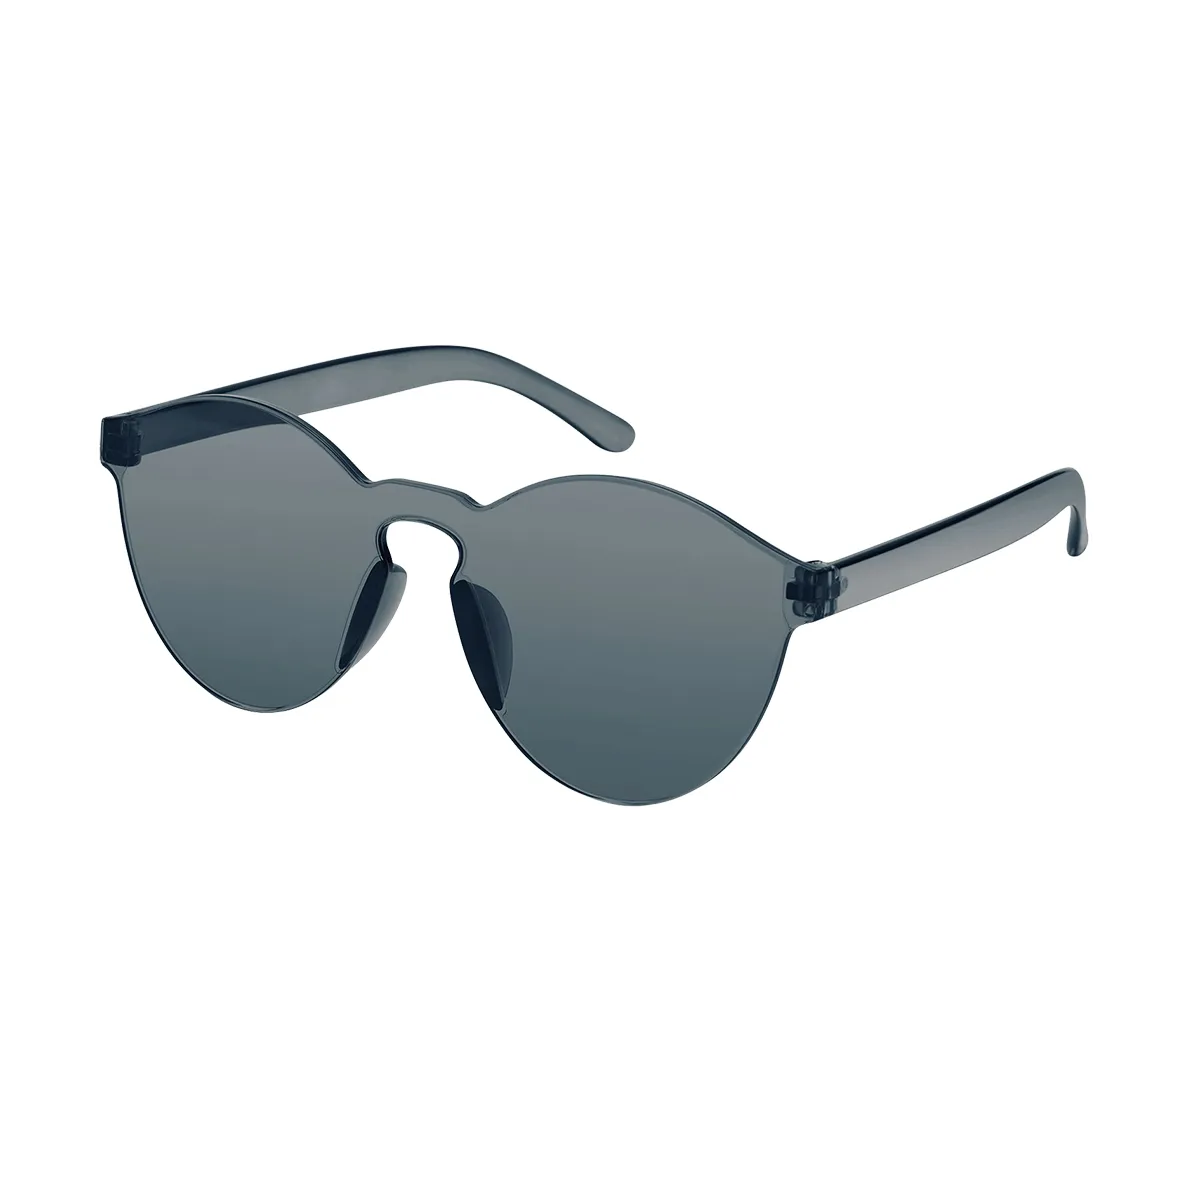 Calloway - Round Gray Sunglasses for Women